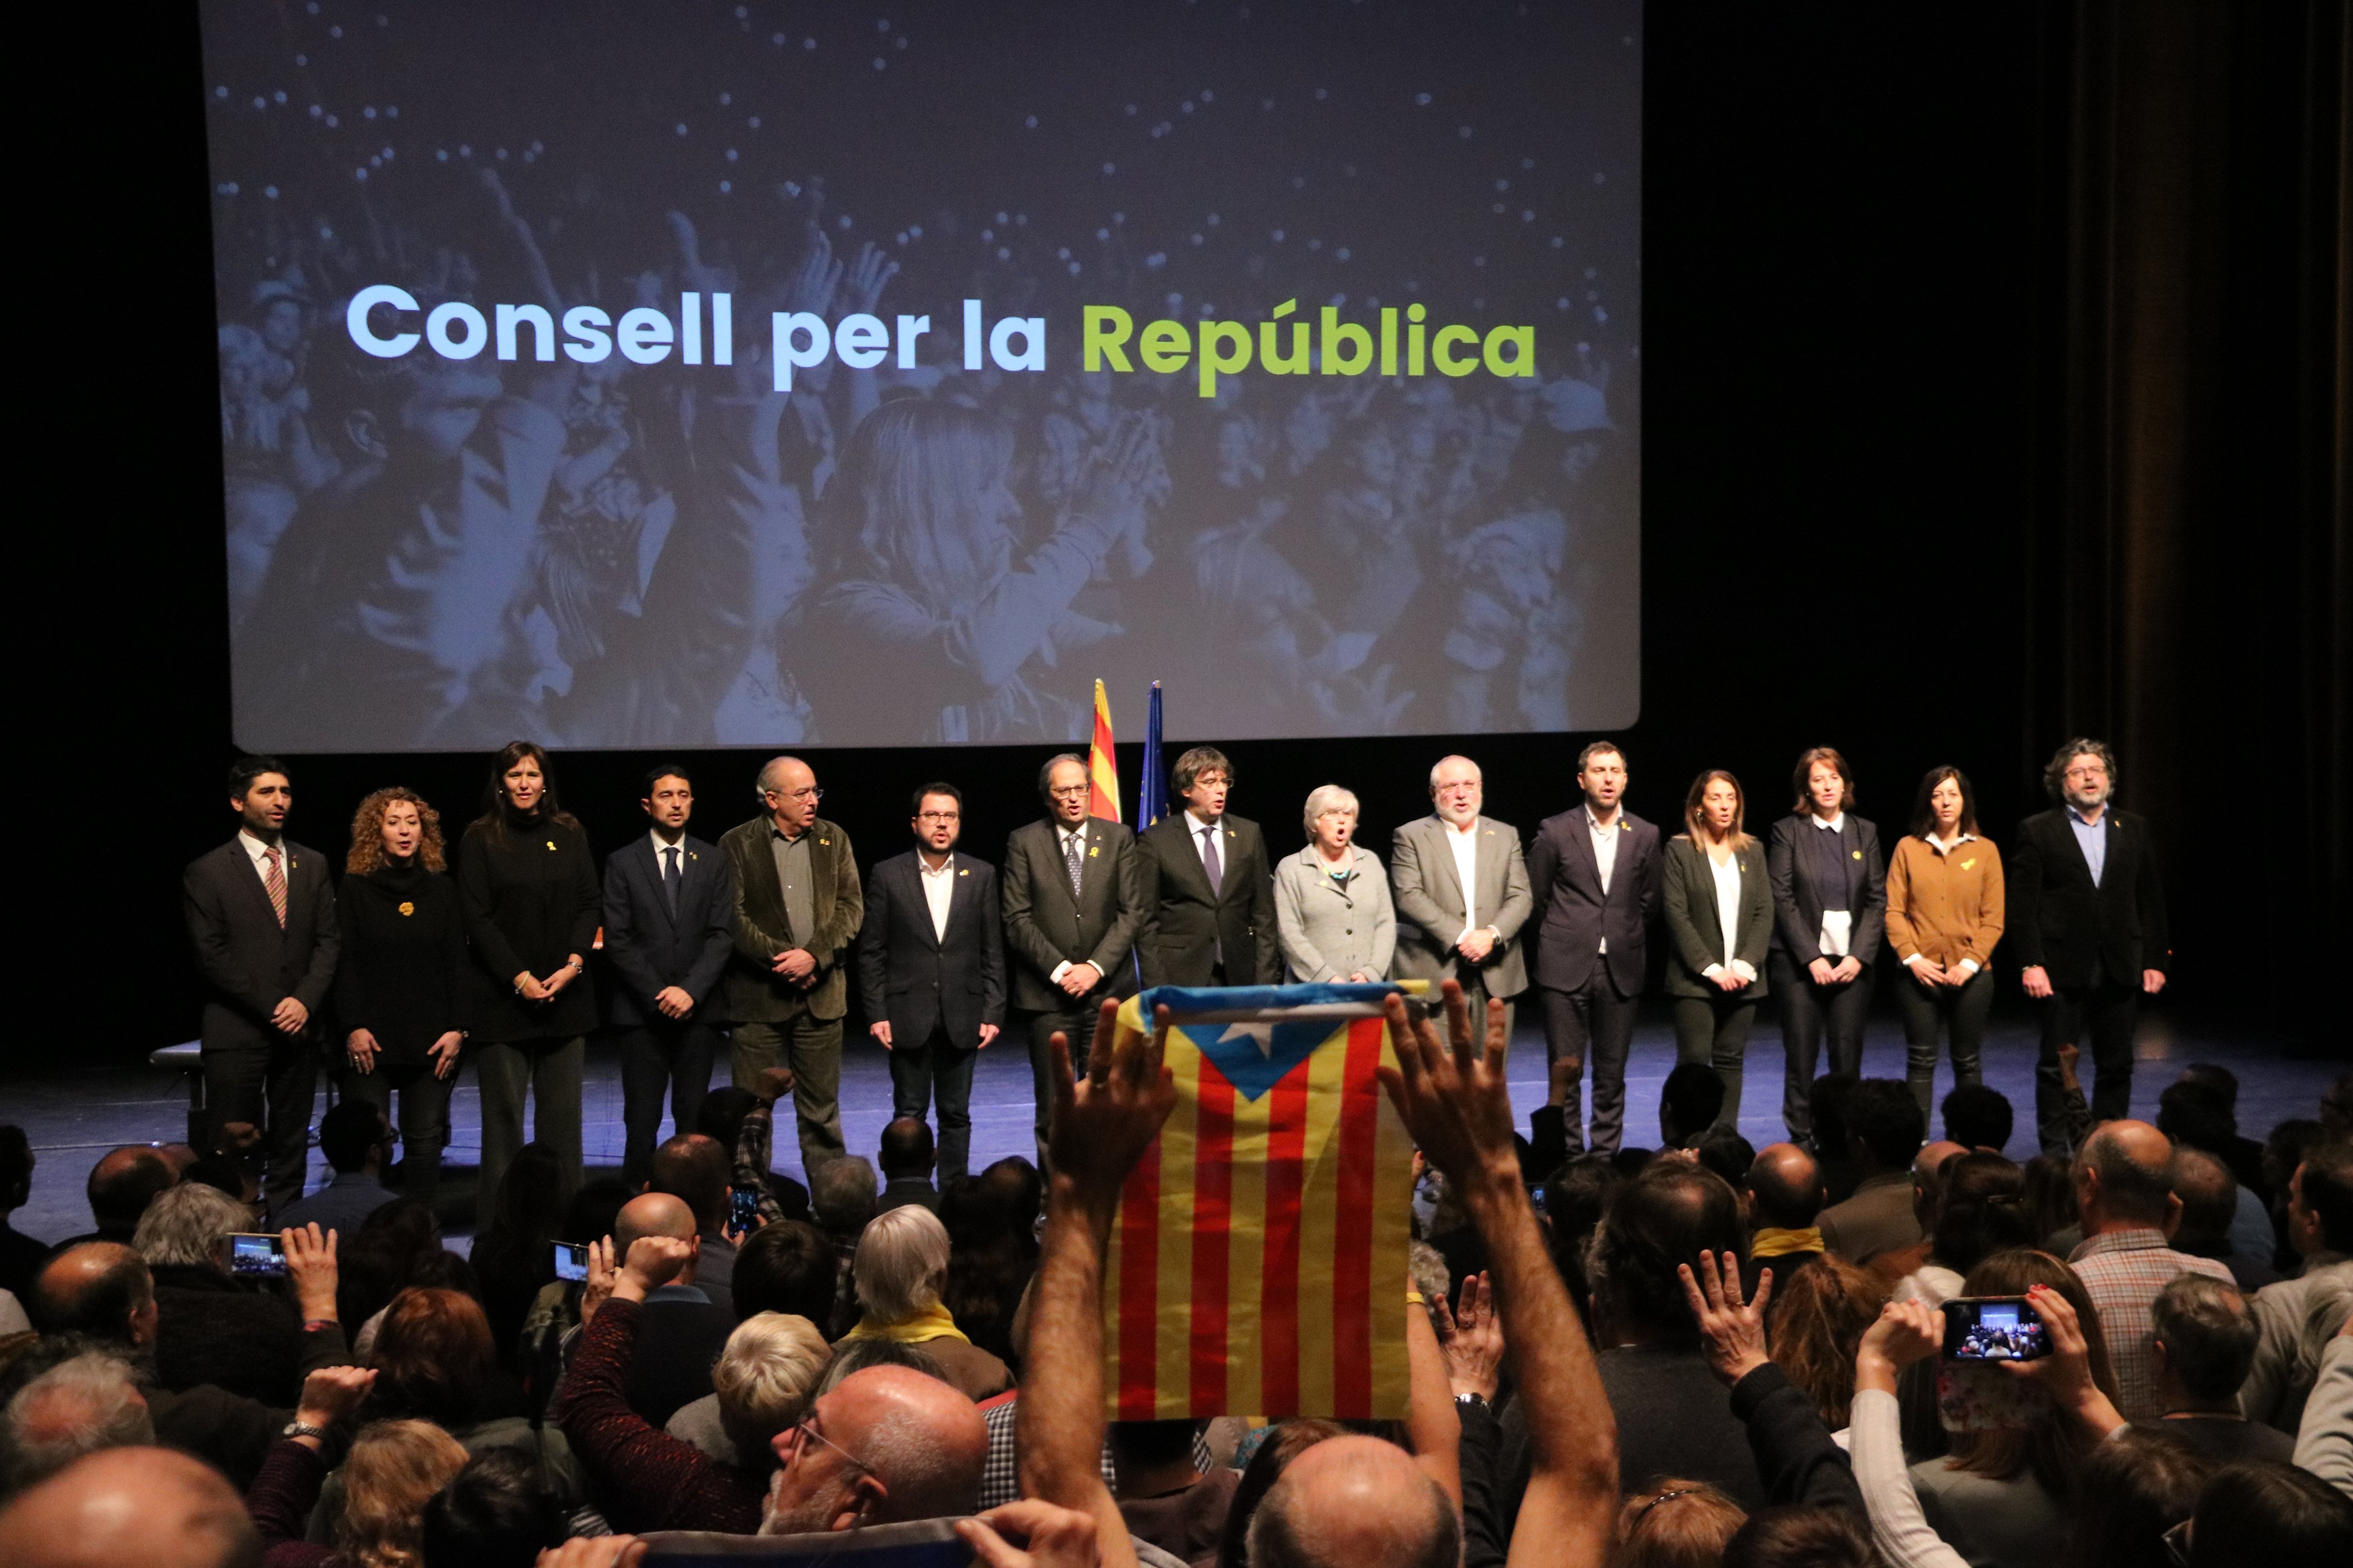 El Consell per la República convoca la asamblea de representantes el 31 de octubre